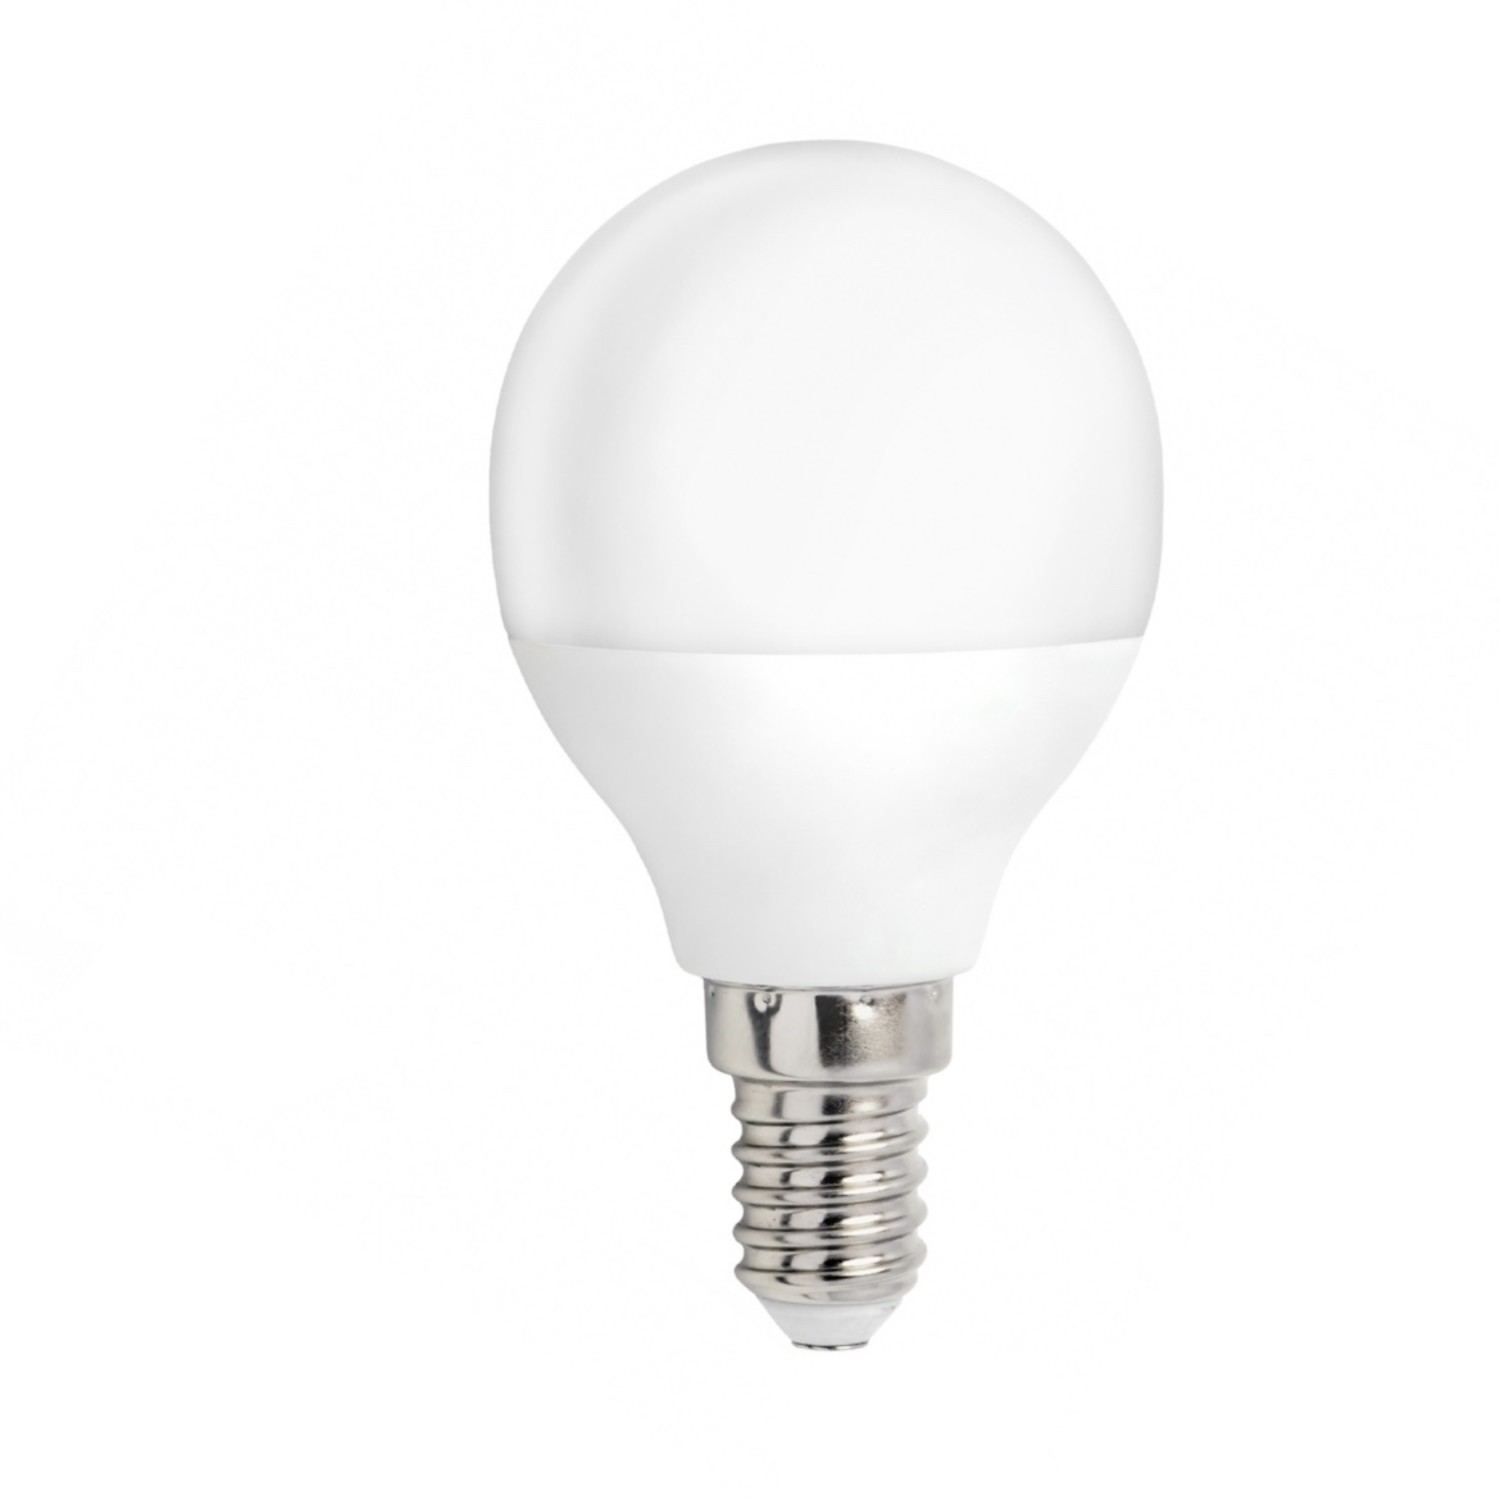 Heer verwennen Schouderophalend LED lamp - E14 fitting - 4W vervangt 40W - Daglicht wit 6400K -  Ledlichtdiscounter.nl